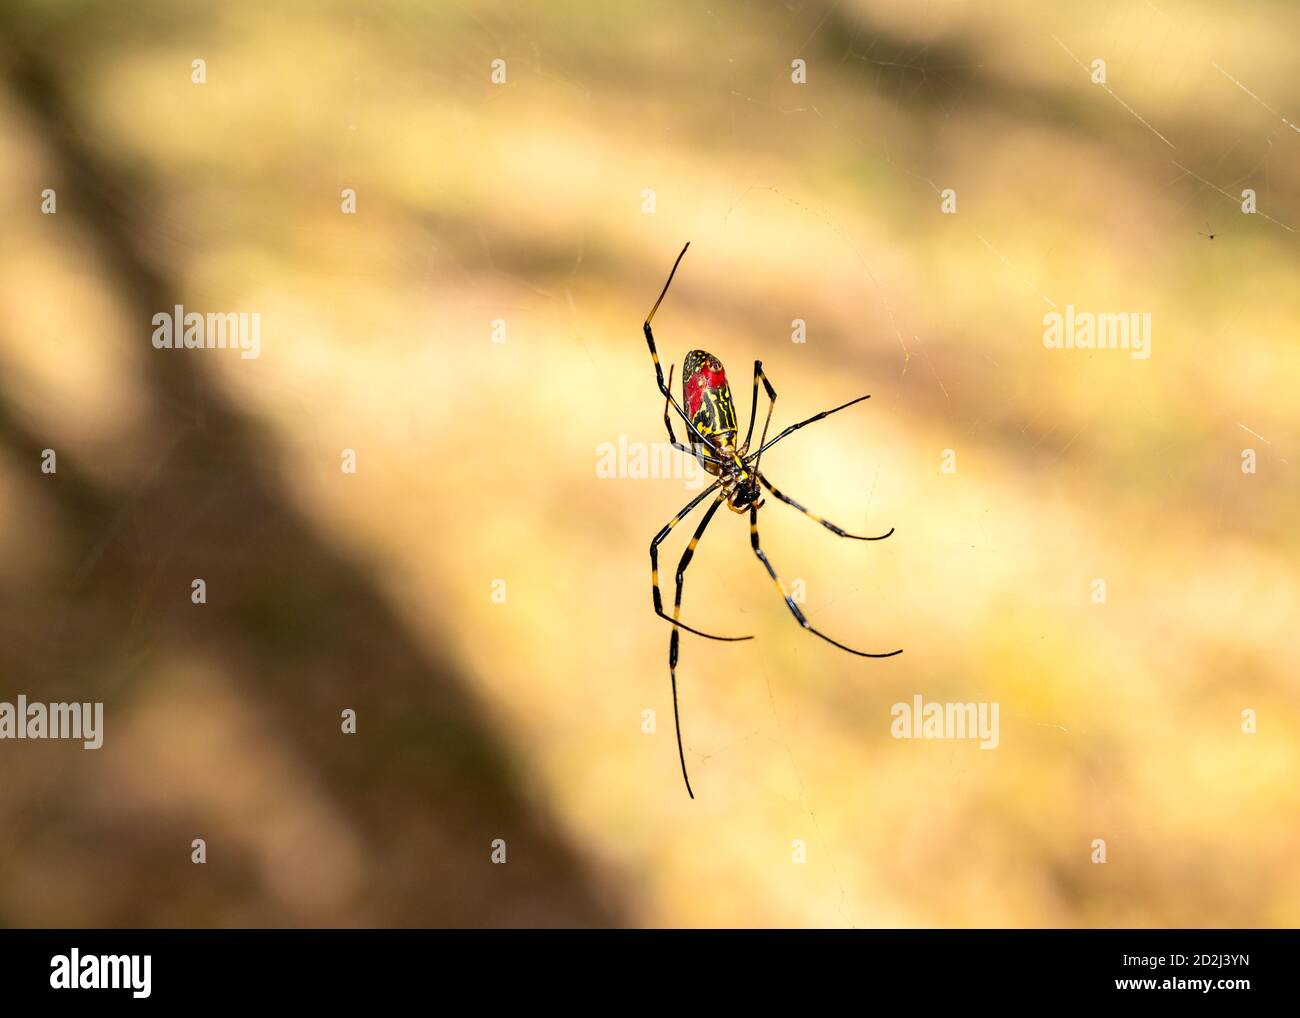 Primer plano de una araña japonesa de Joro moviéndose a través de su web. Imagen de DOF poco profunda tomada en Asia. Foto de stock